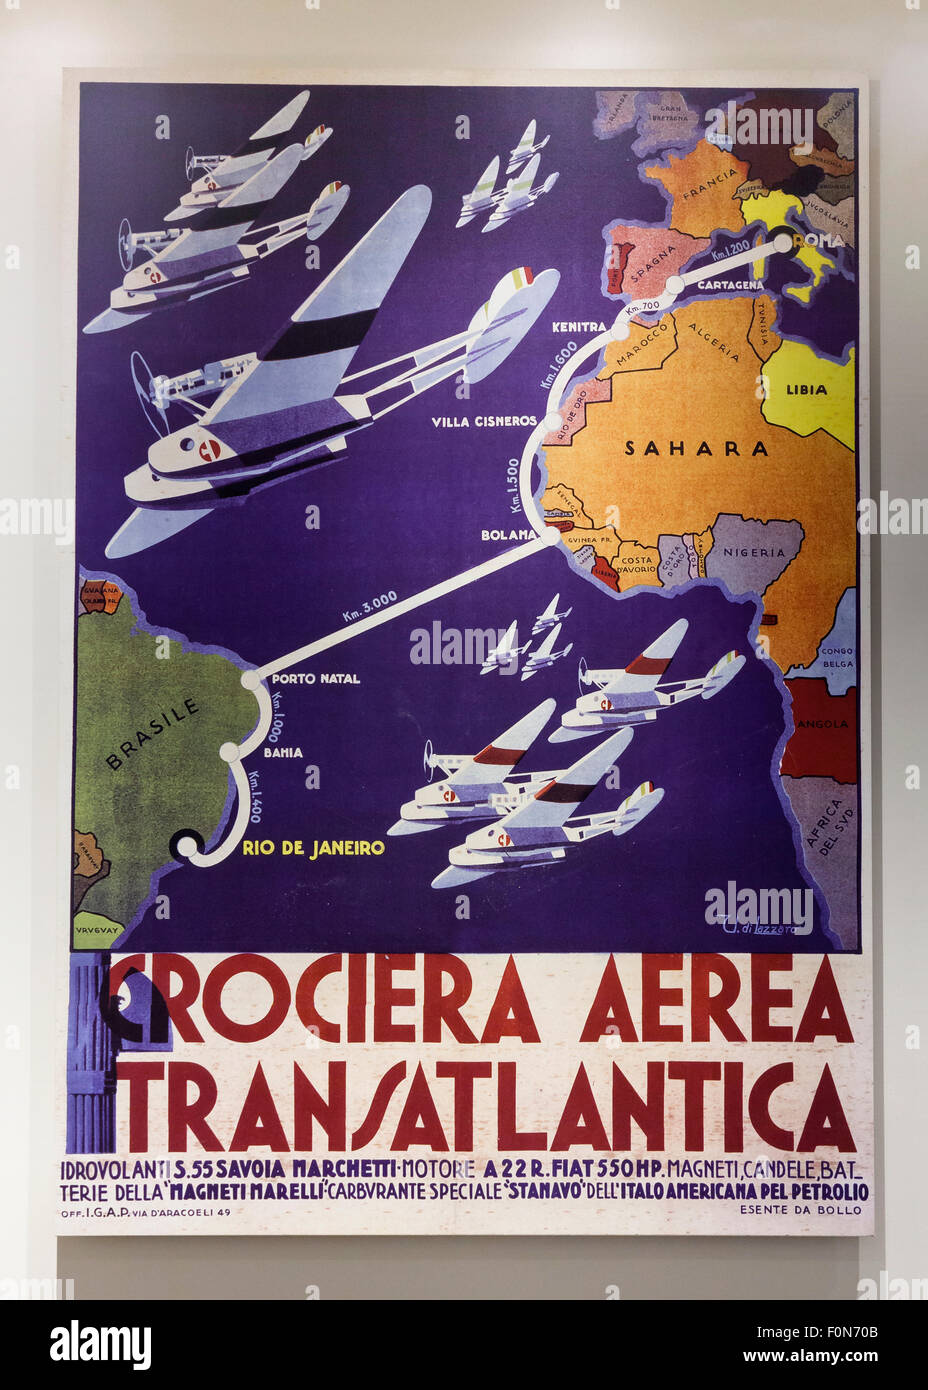 Italy-Brazil croisière transatlantique de l'air affiche publicitaire, vers 1930 Banque D'Images